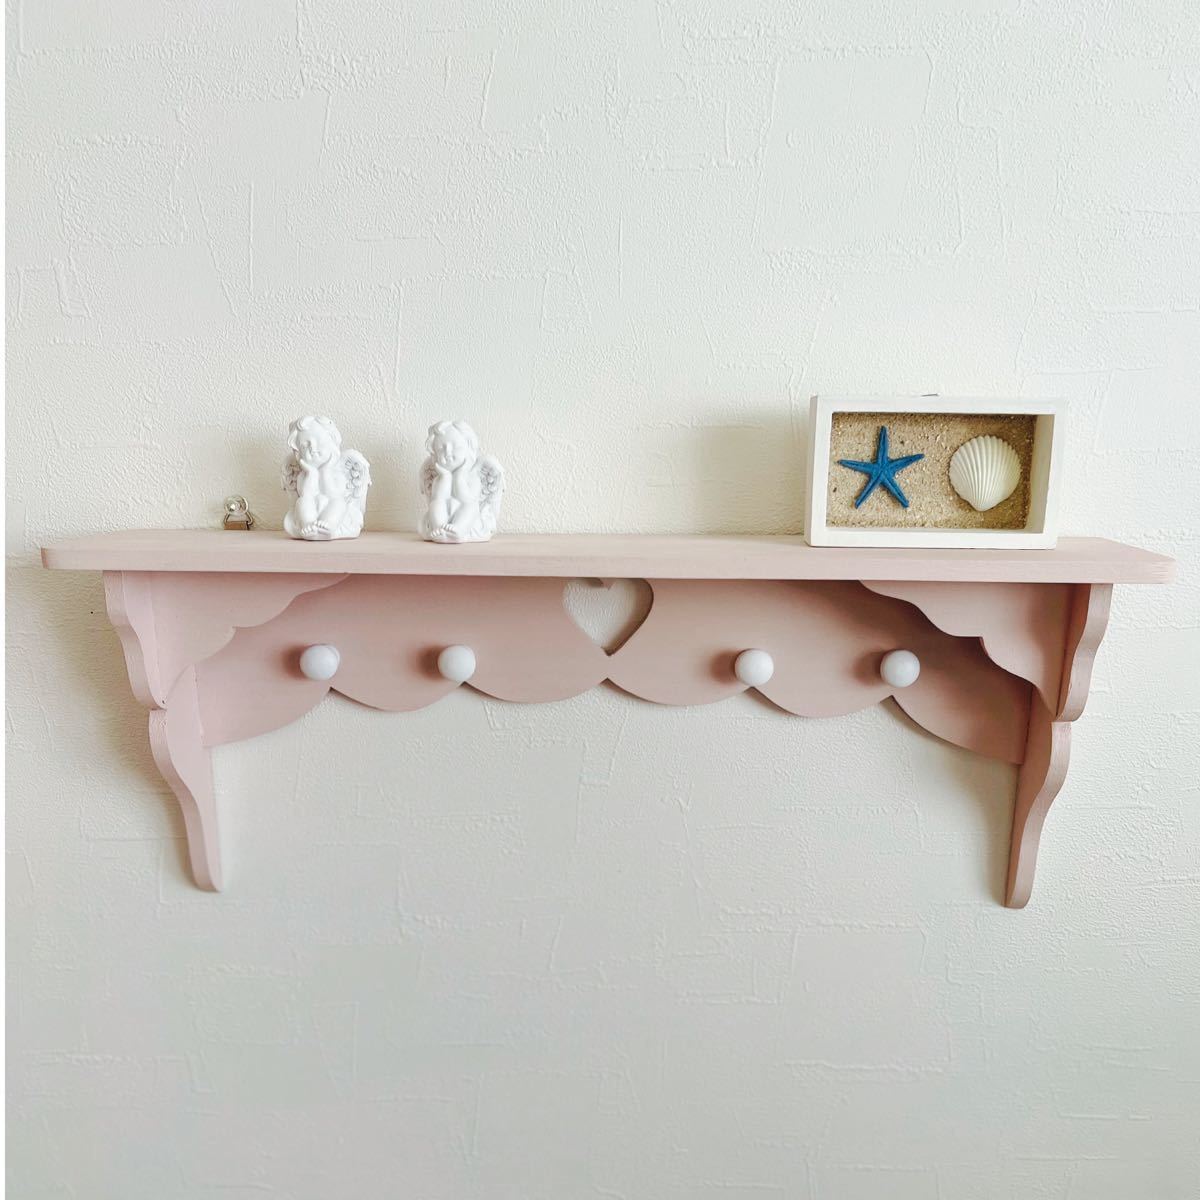 ハートスモーキーピンクシェルフ棚 ハンドメイド飾り棚 pink antique shelfの画像2